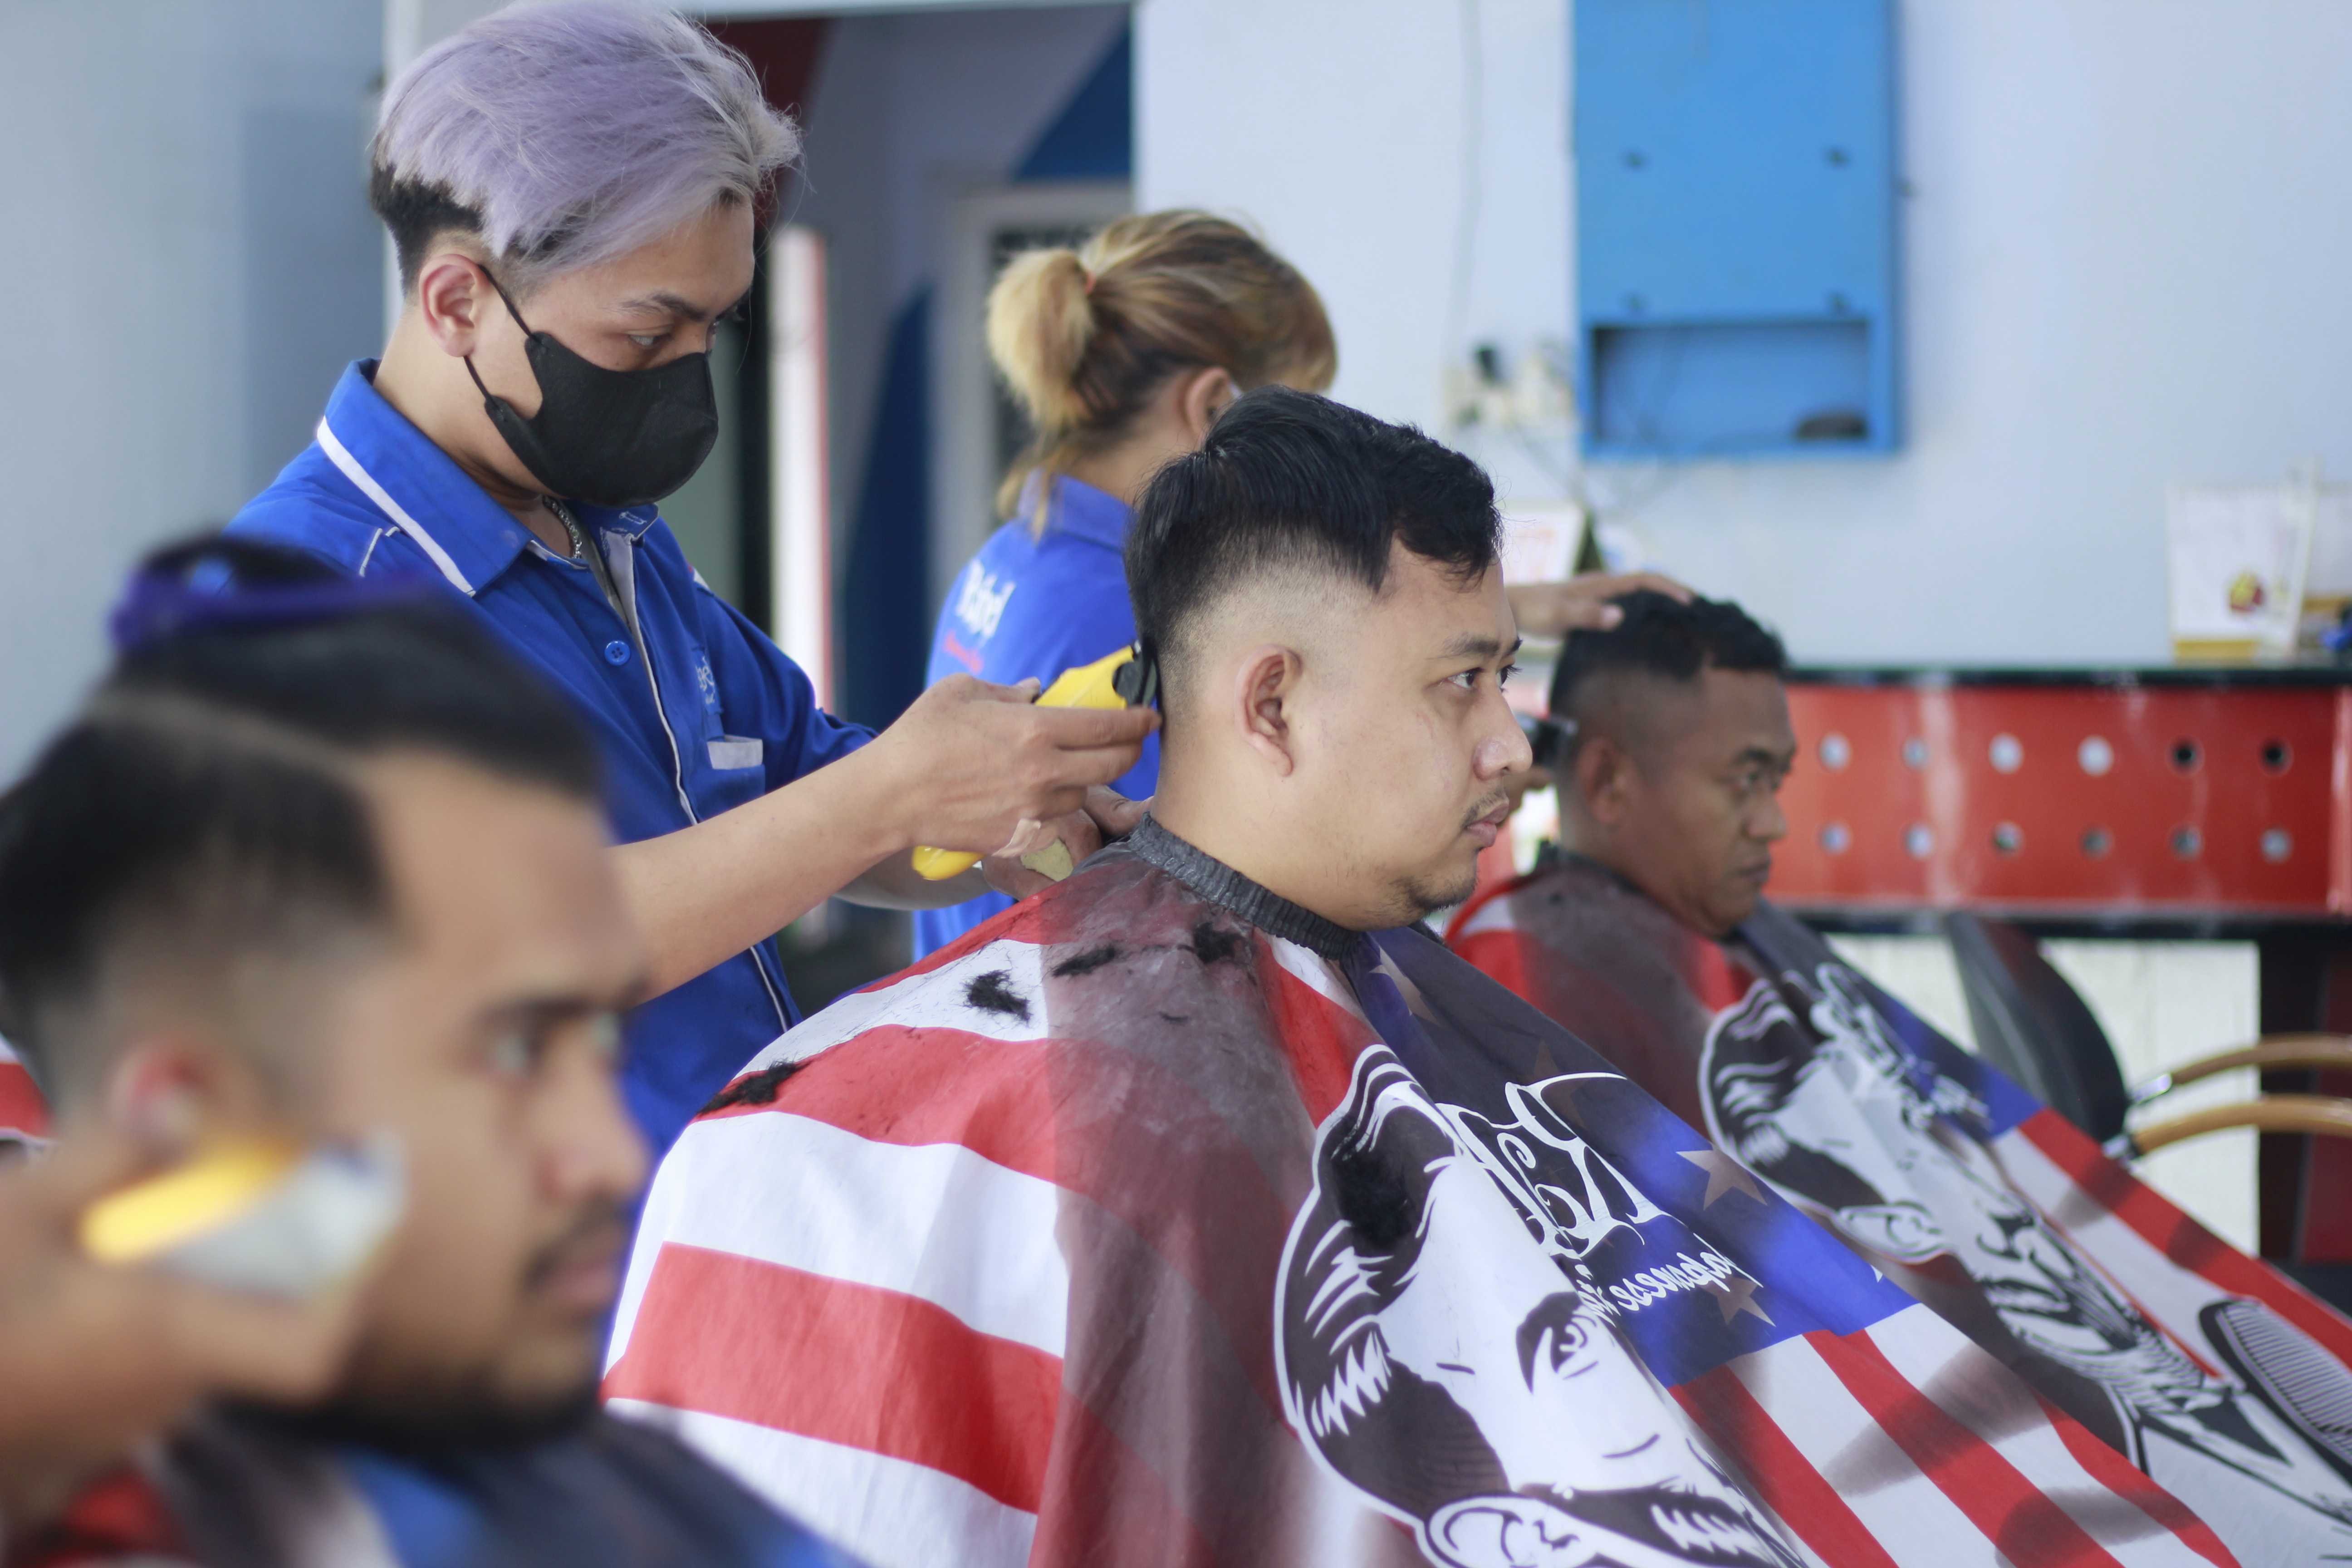 Rekomendasi Tempat Cukur Rambut Di Jl. Tumenggung Suryo Terbaik